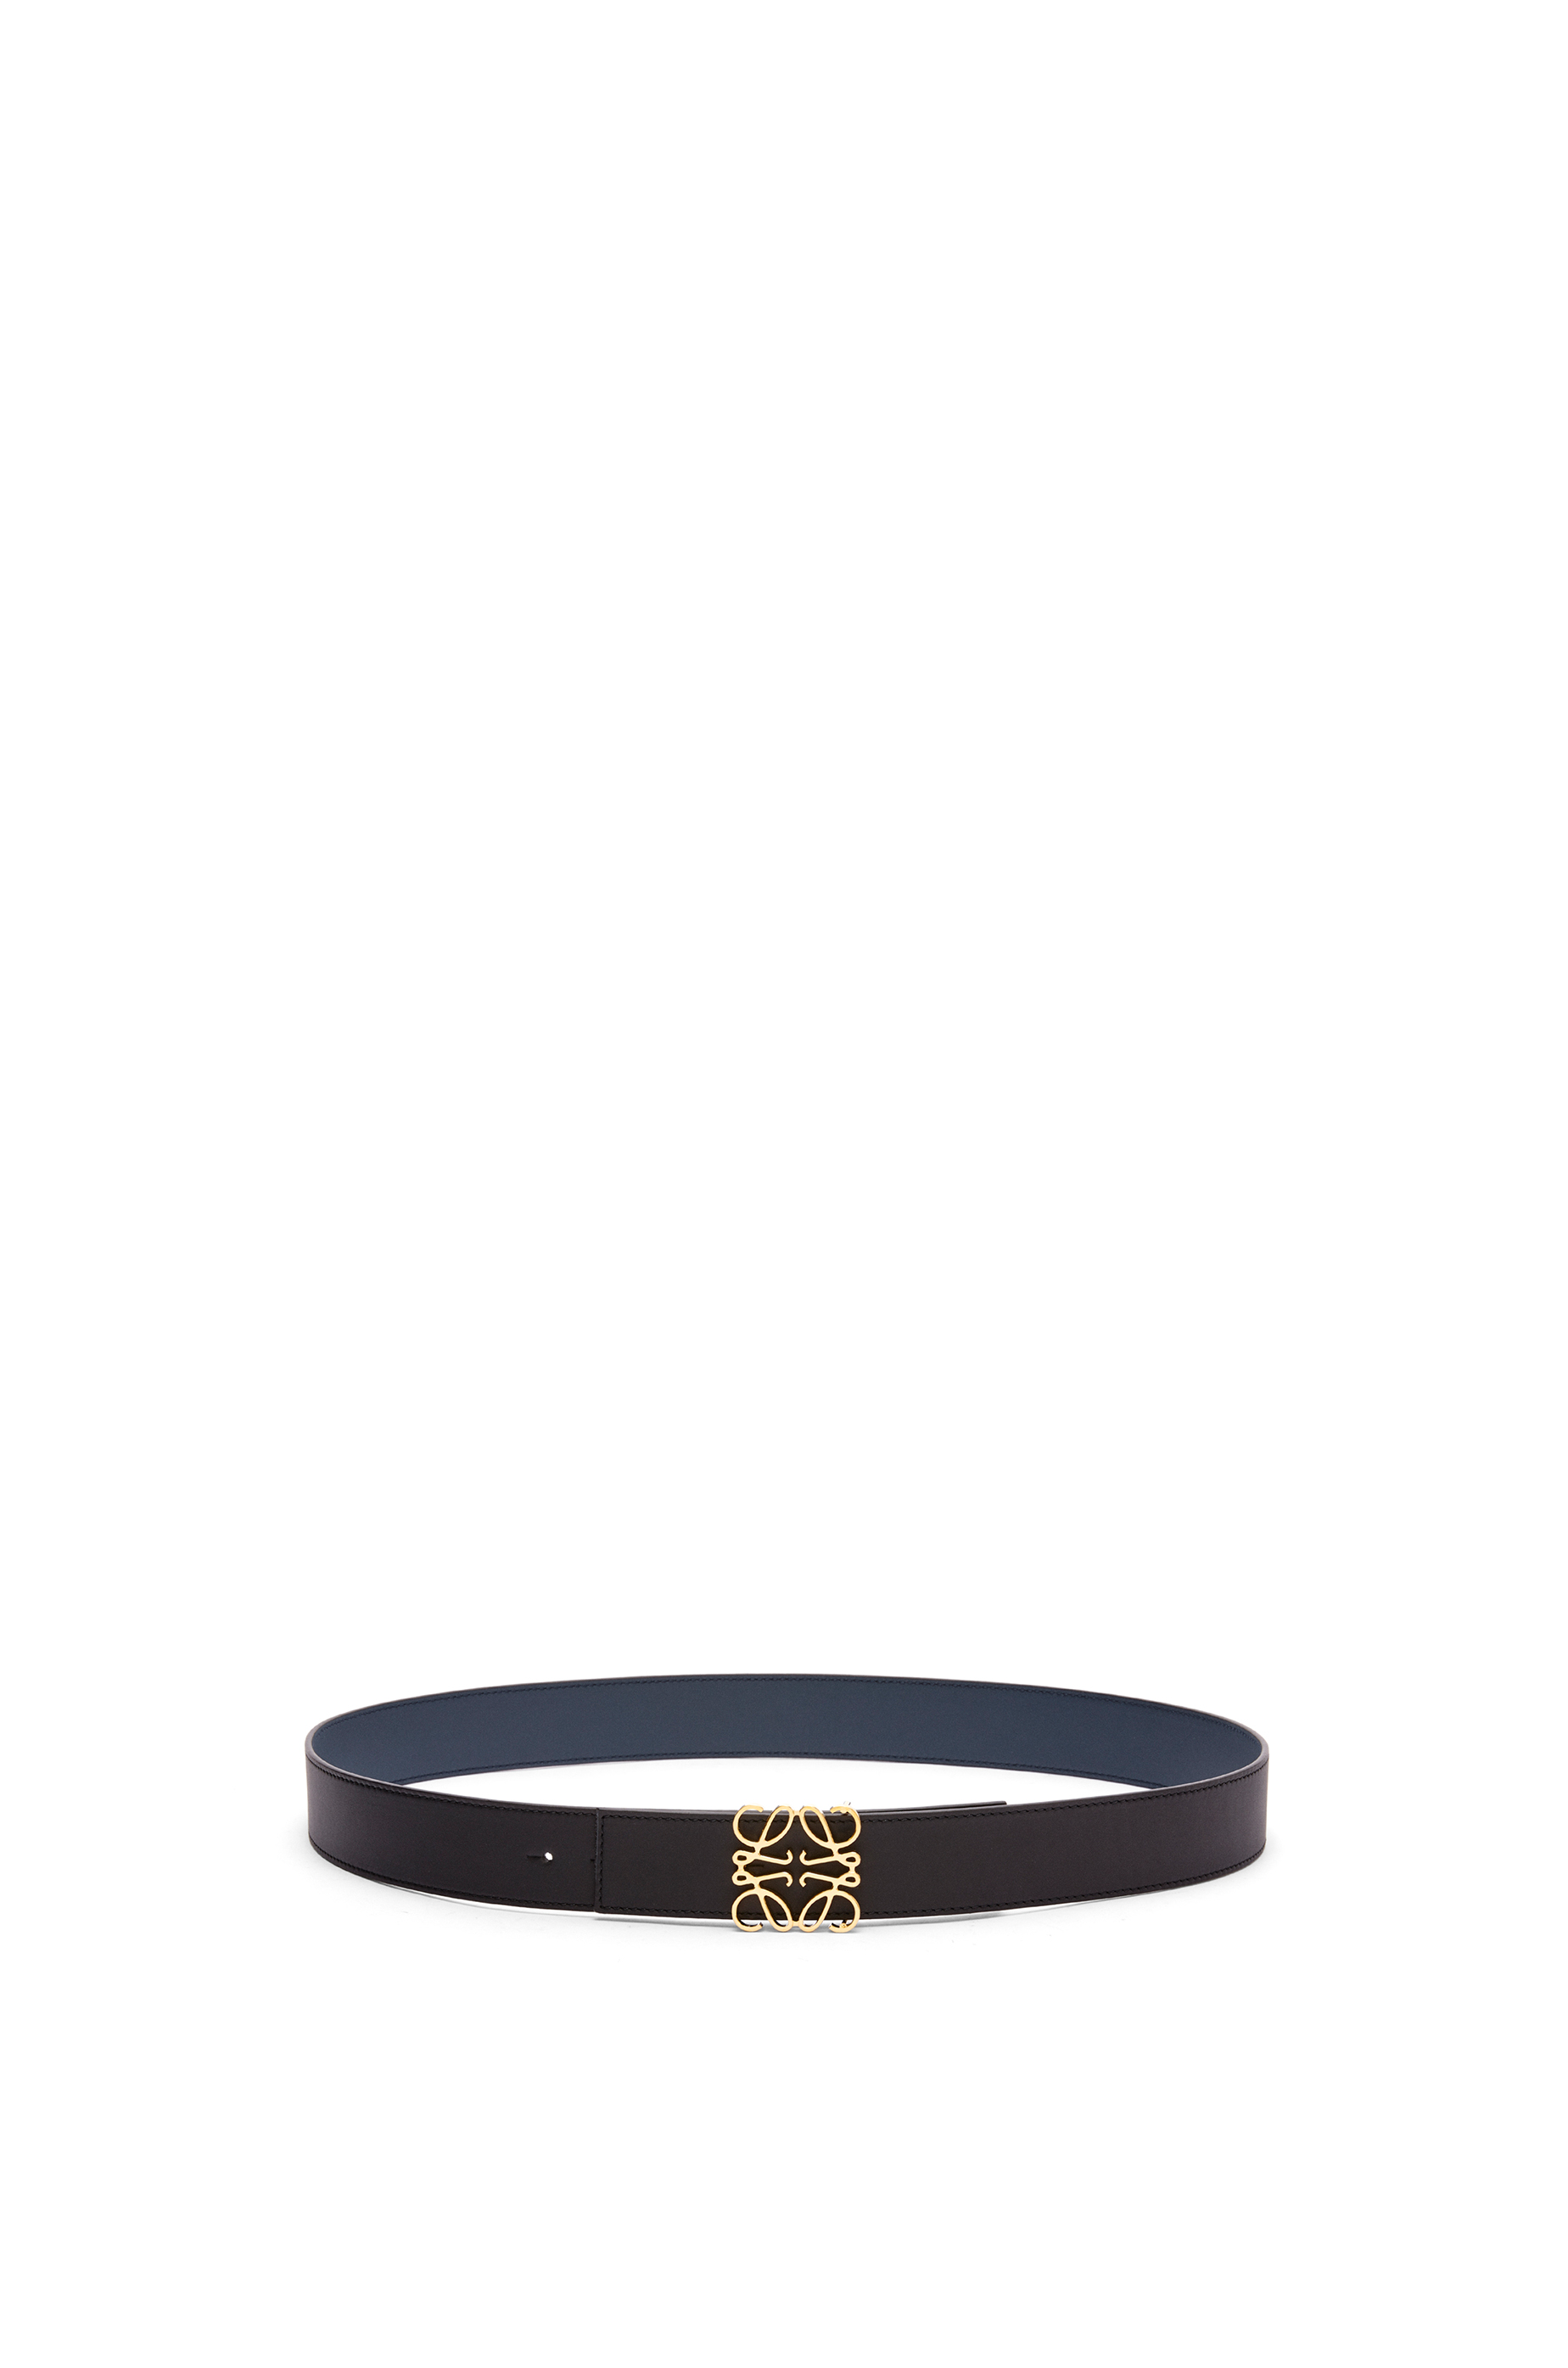 Luxury belts for men - LOEWE Official Site - LOEWE